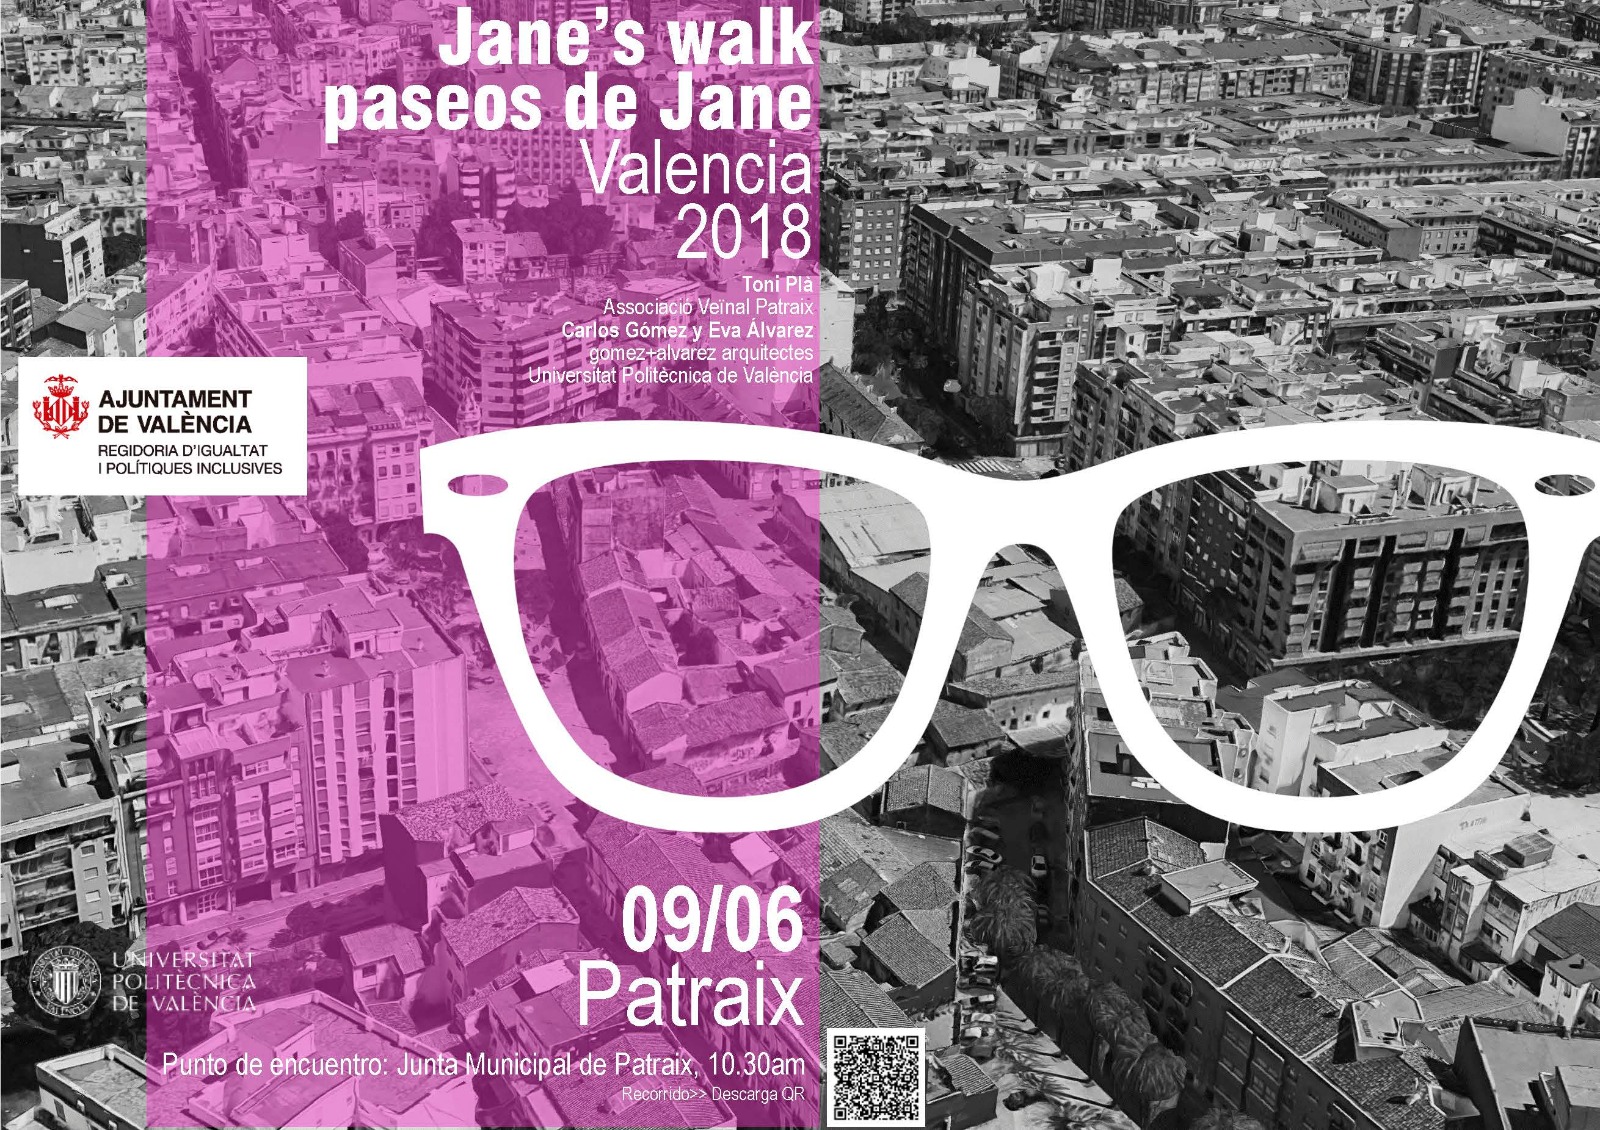 Passeig per Patraix “Jane’s walk” 9 de Juny